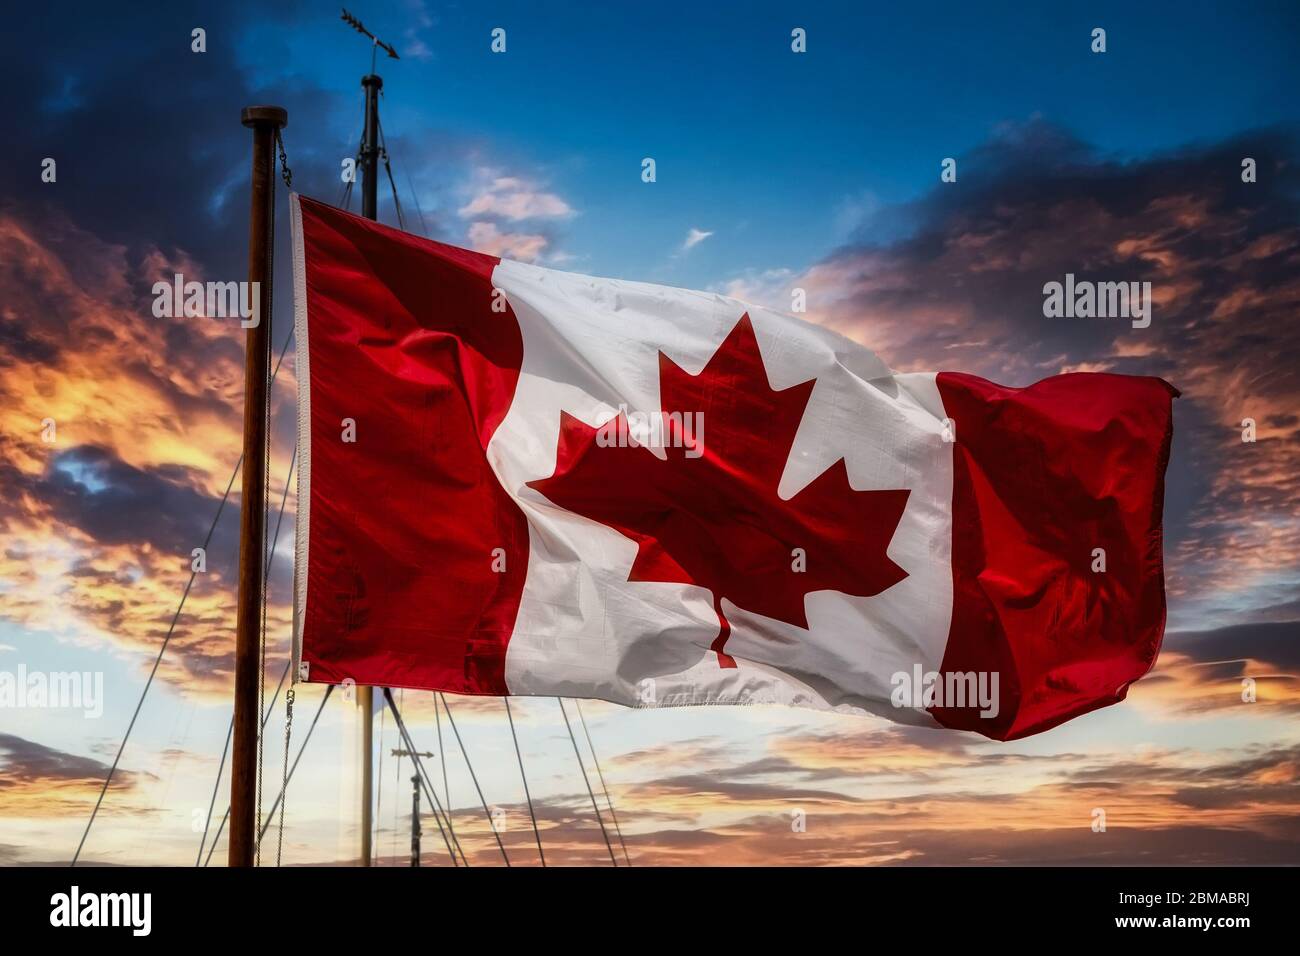 Canadian Flag on Mast at Sunset Stock Photo